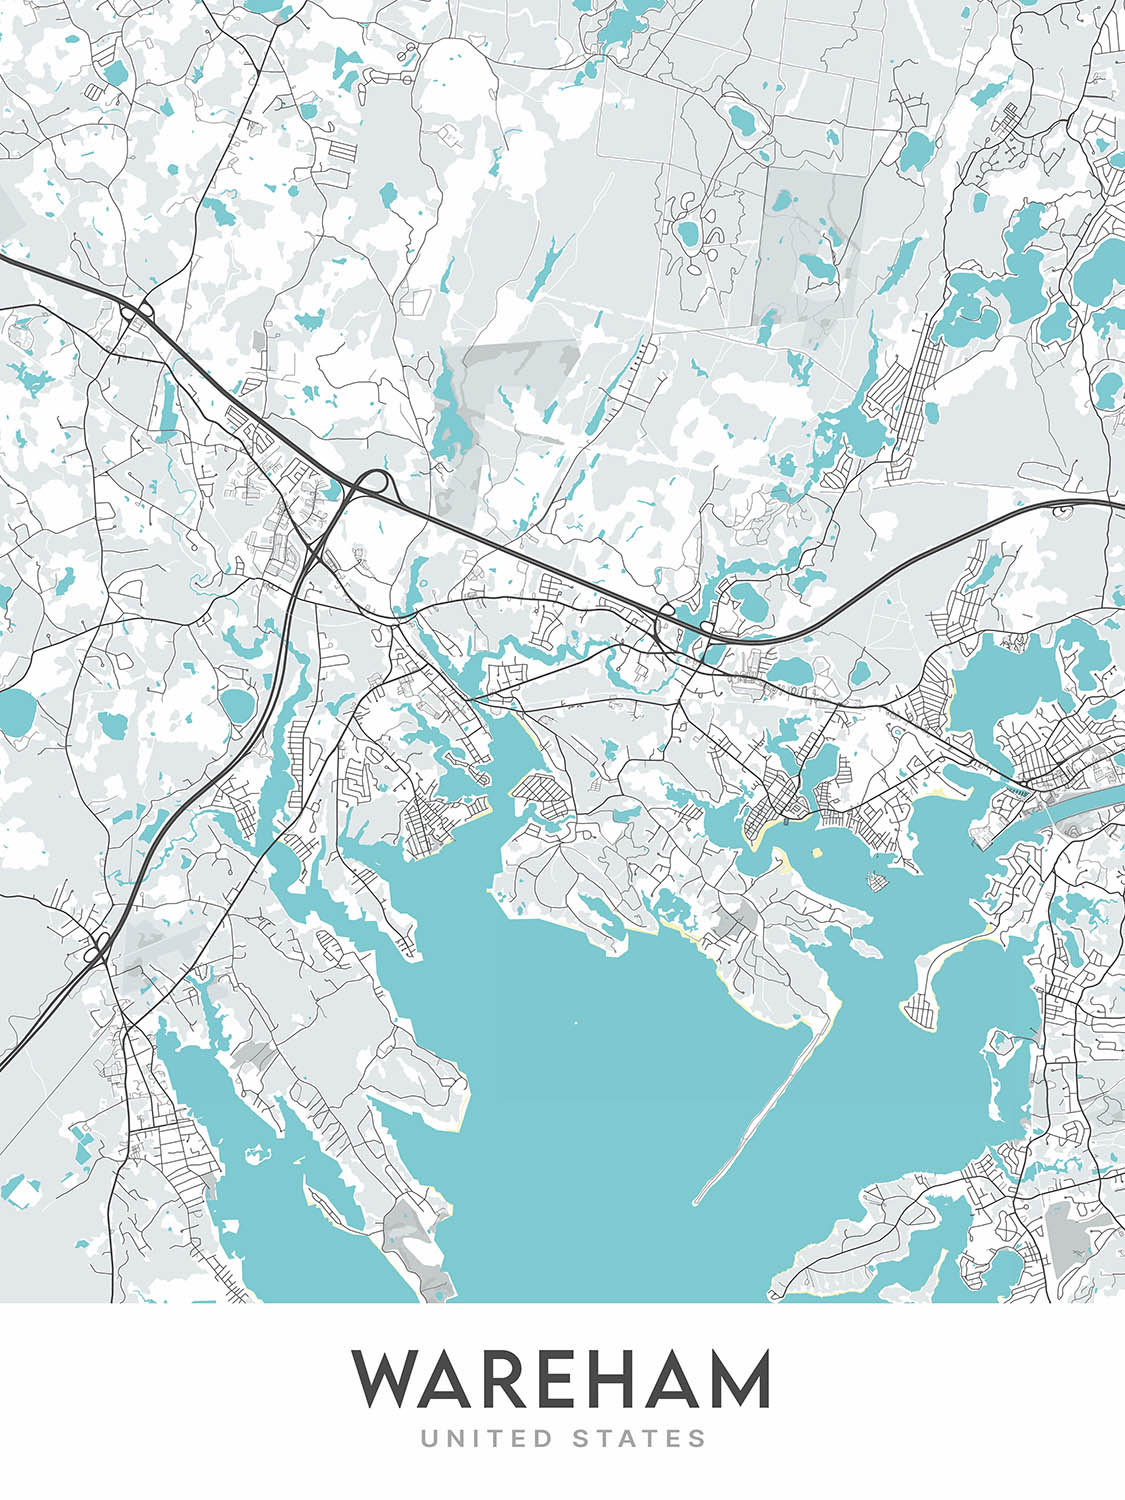 Mapa moderno de la ciudad de Wareham, MA: río Agawam, Bahía Buttermilk, Great Neck, Little Neck, Long Beach